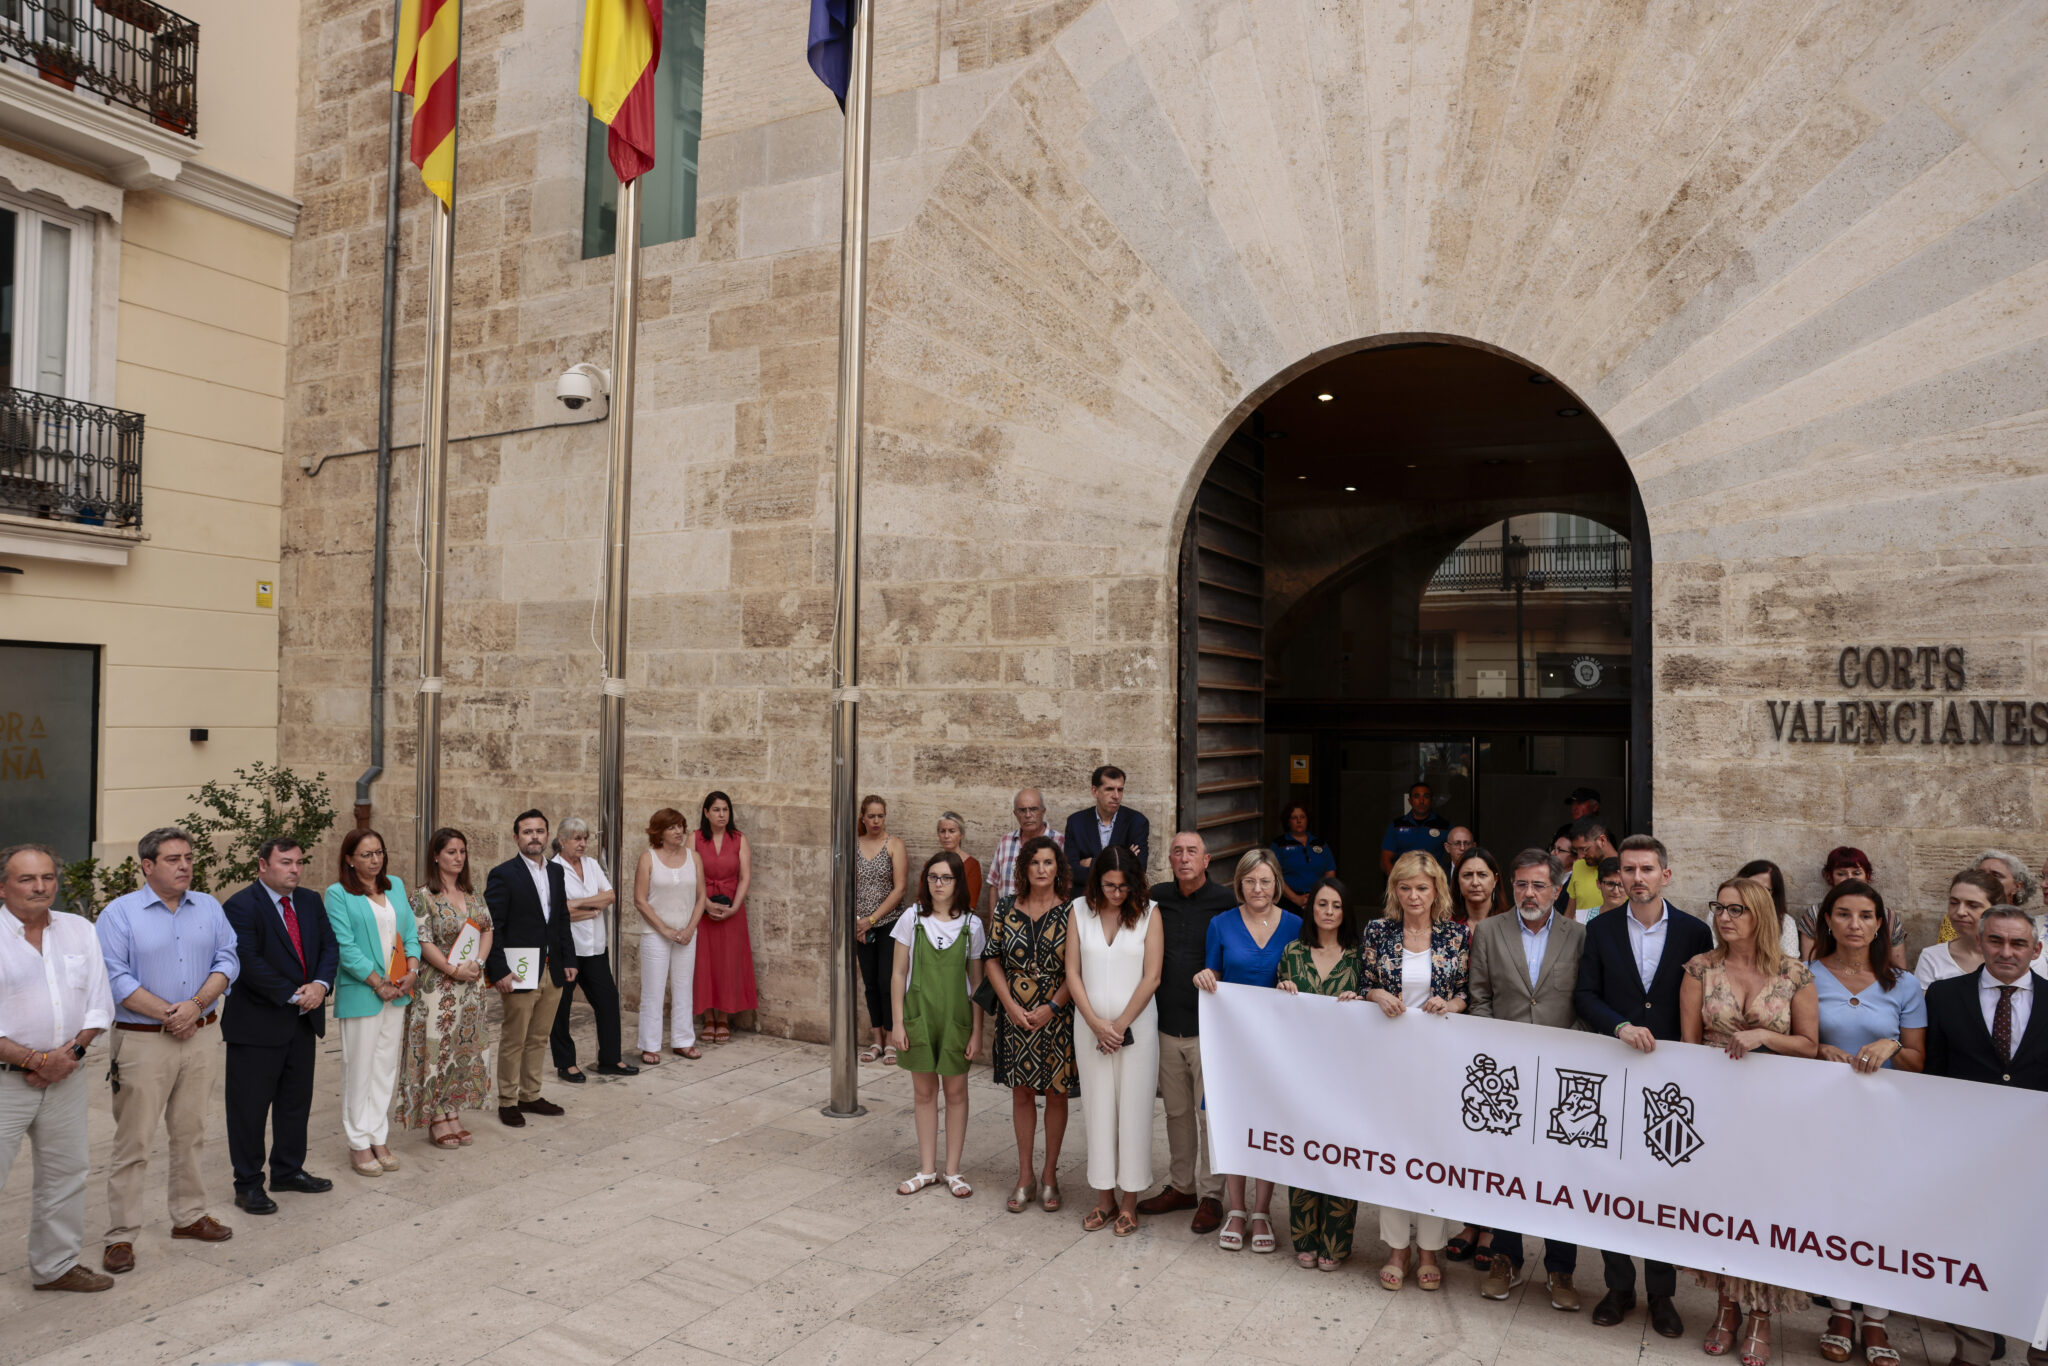 La presidenta de las Cortes Valencianas y Vox se apartan de la pancarta que condena el último asesinato de violencia machista